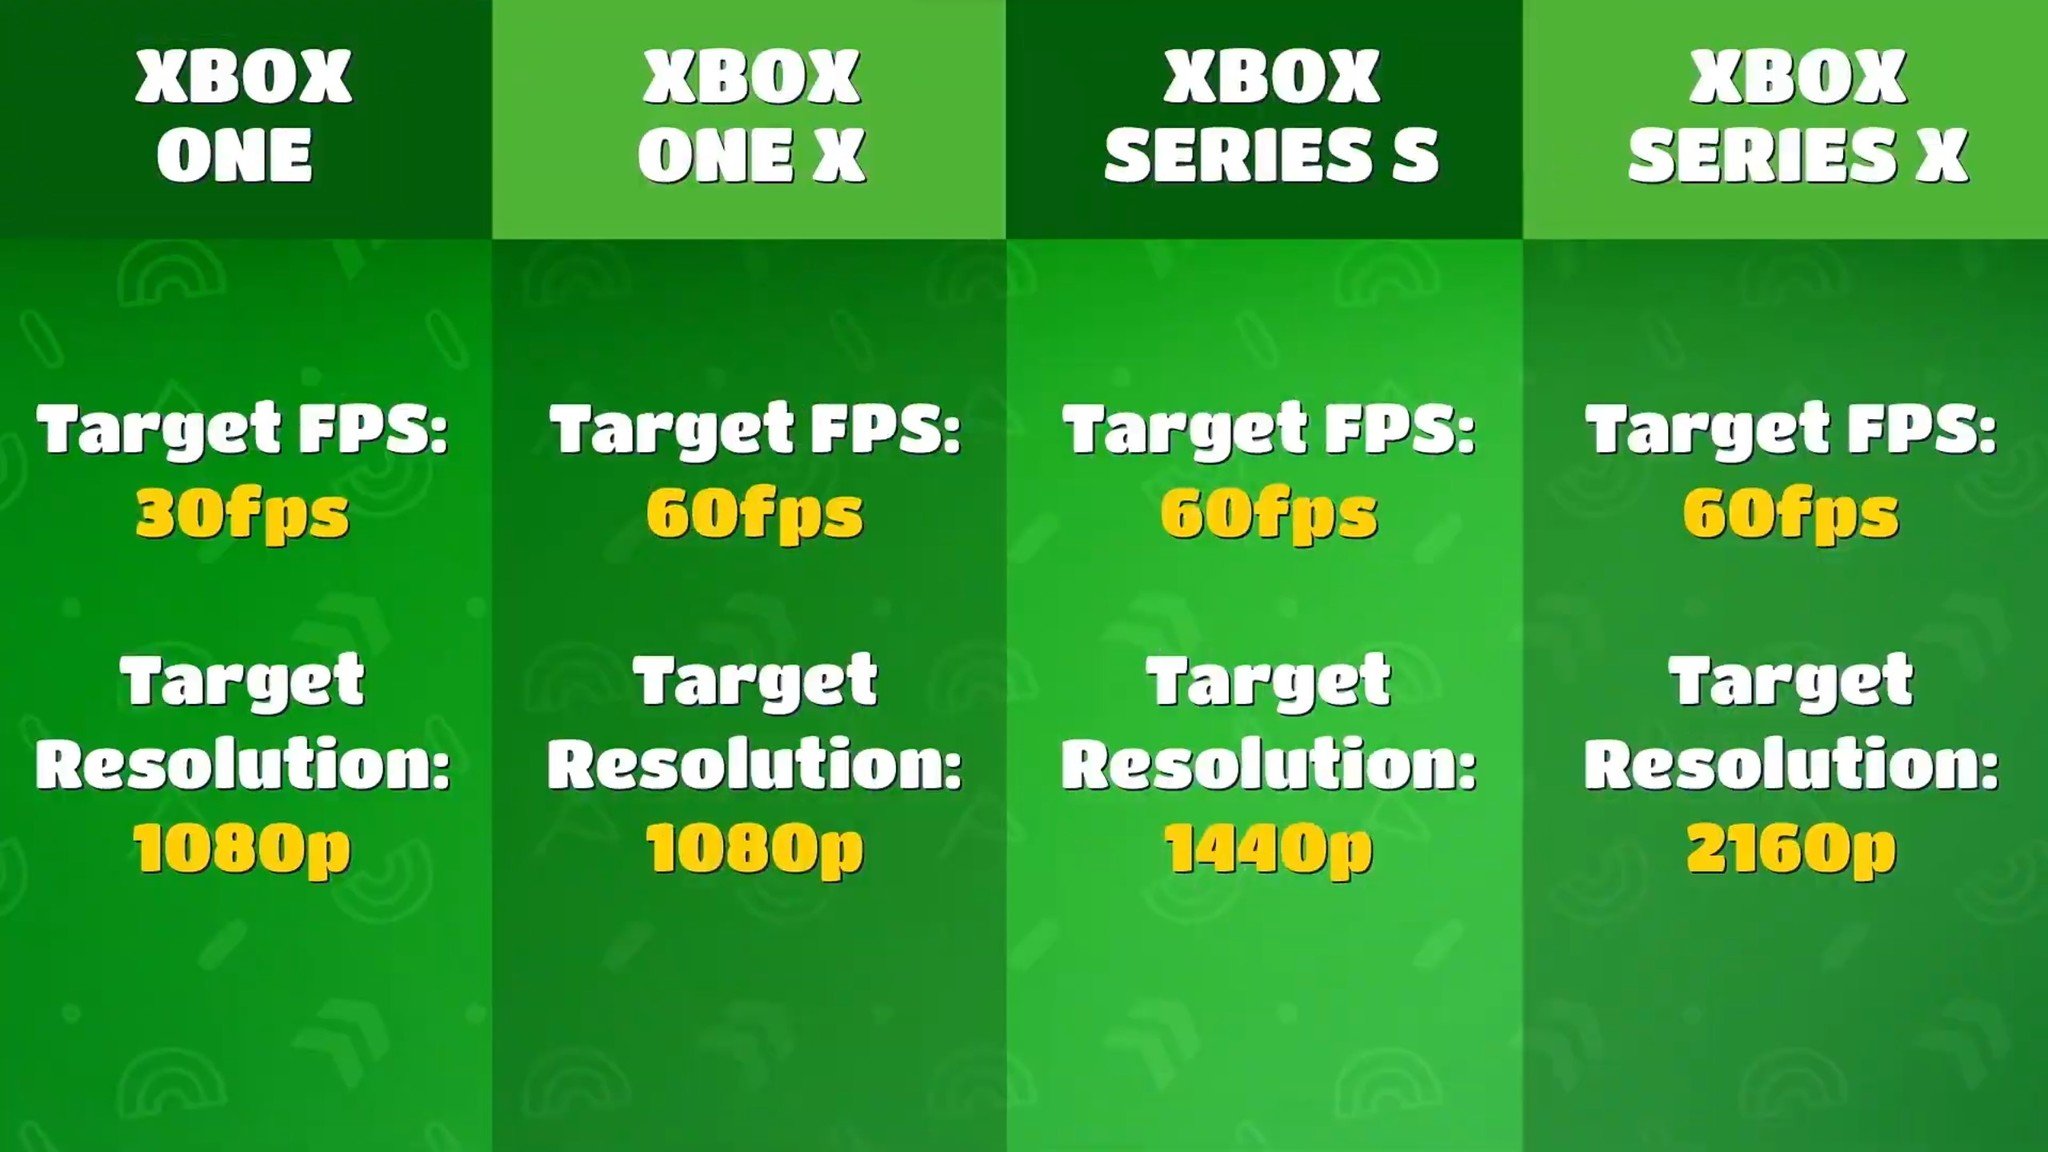 Fall Guys Imagem de metas de desempenho do console Xbox